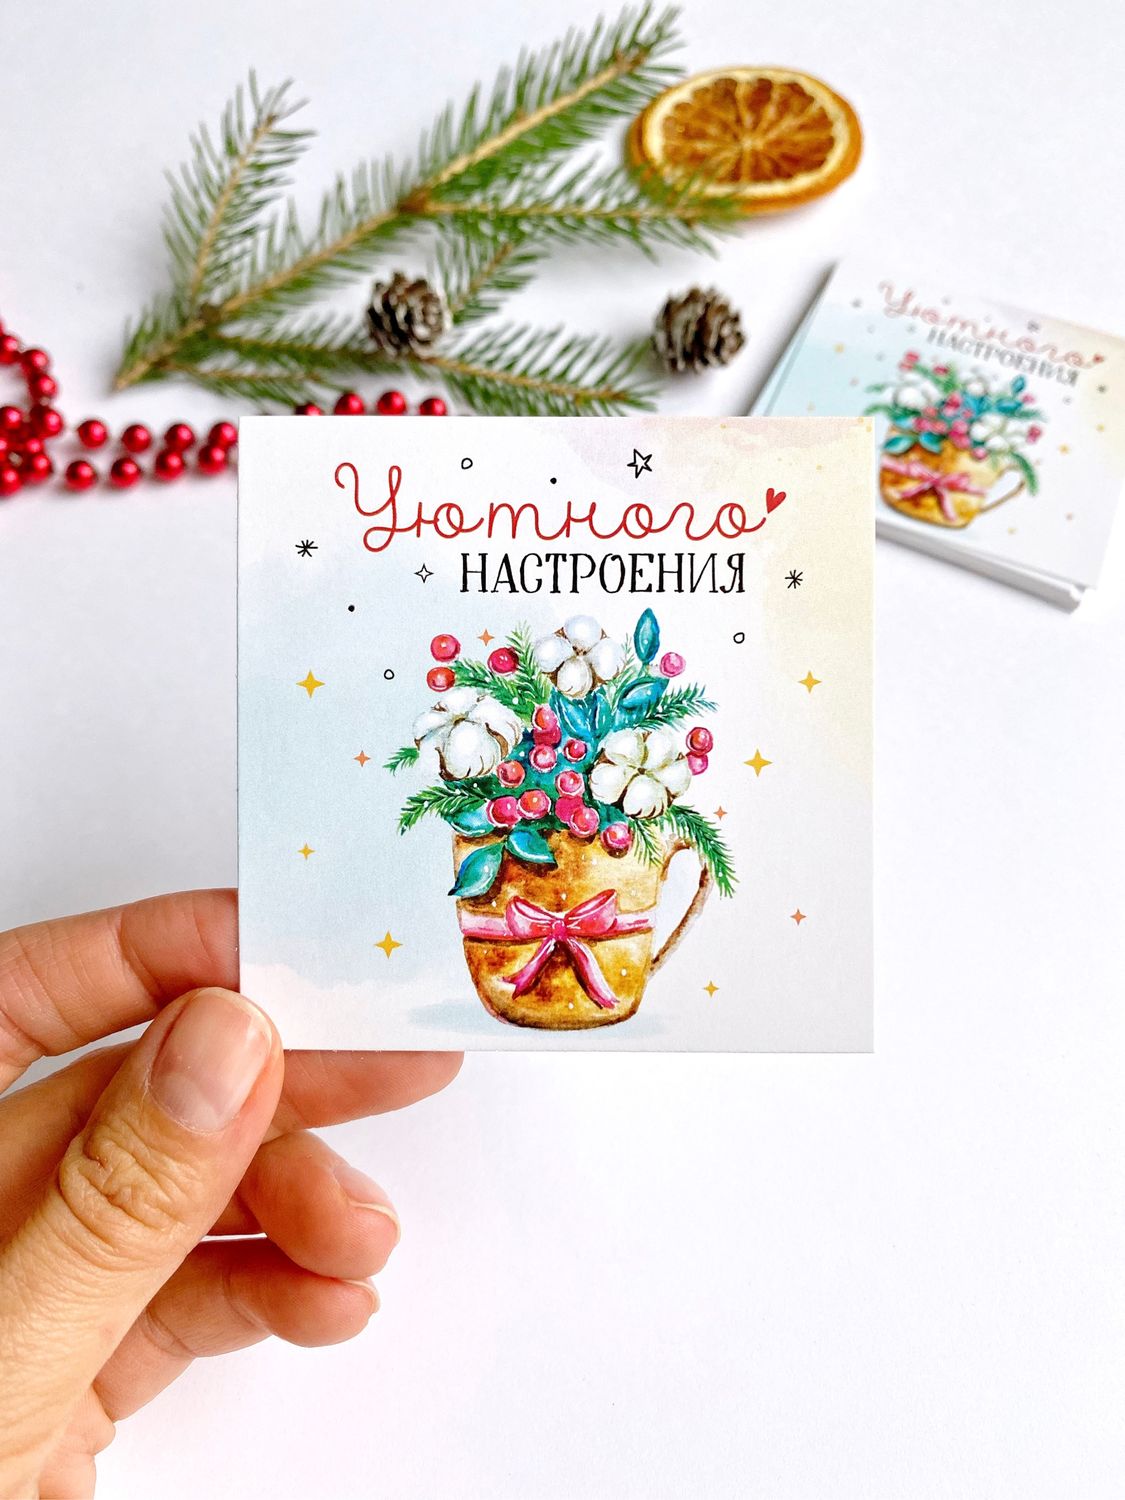 Чудесные новогодние открытки от бишкекской художницы